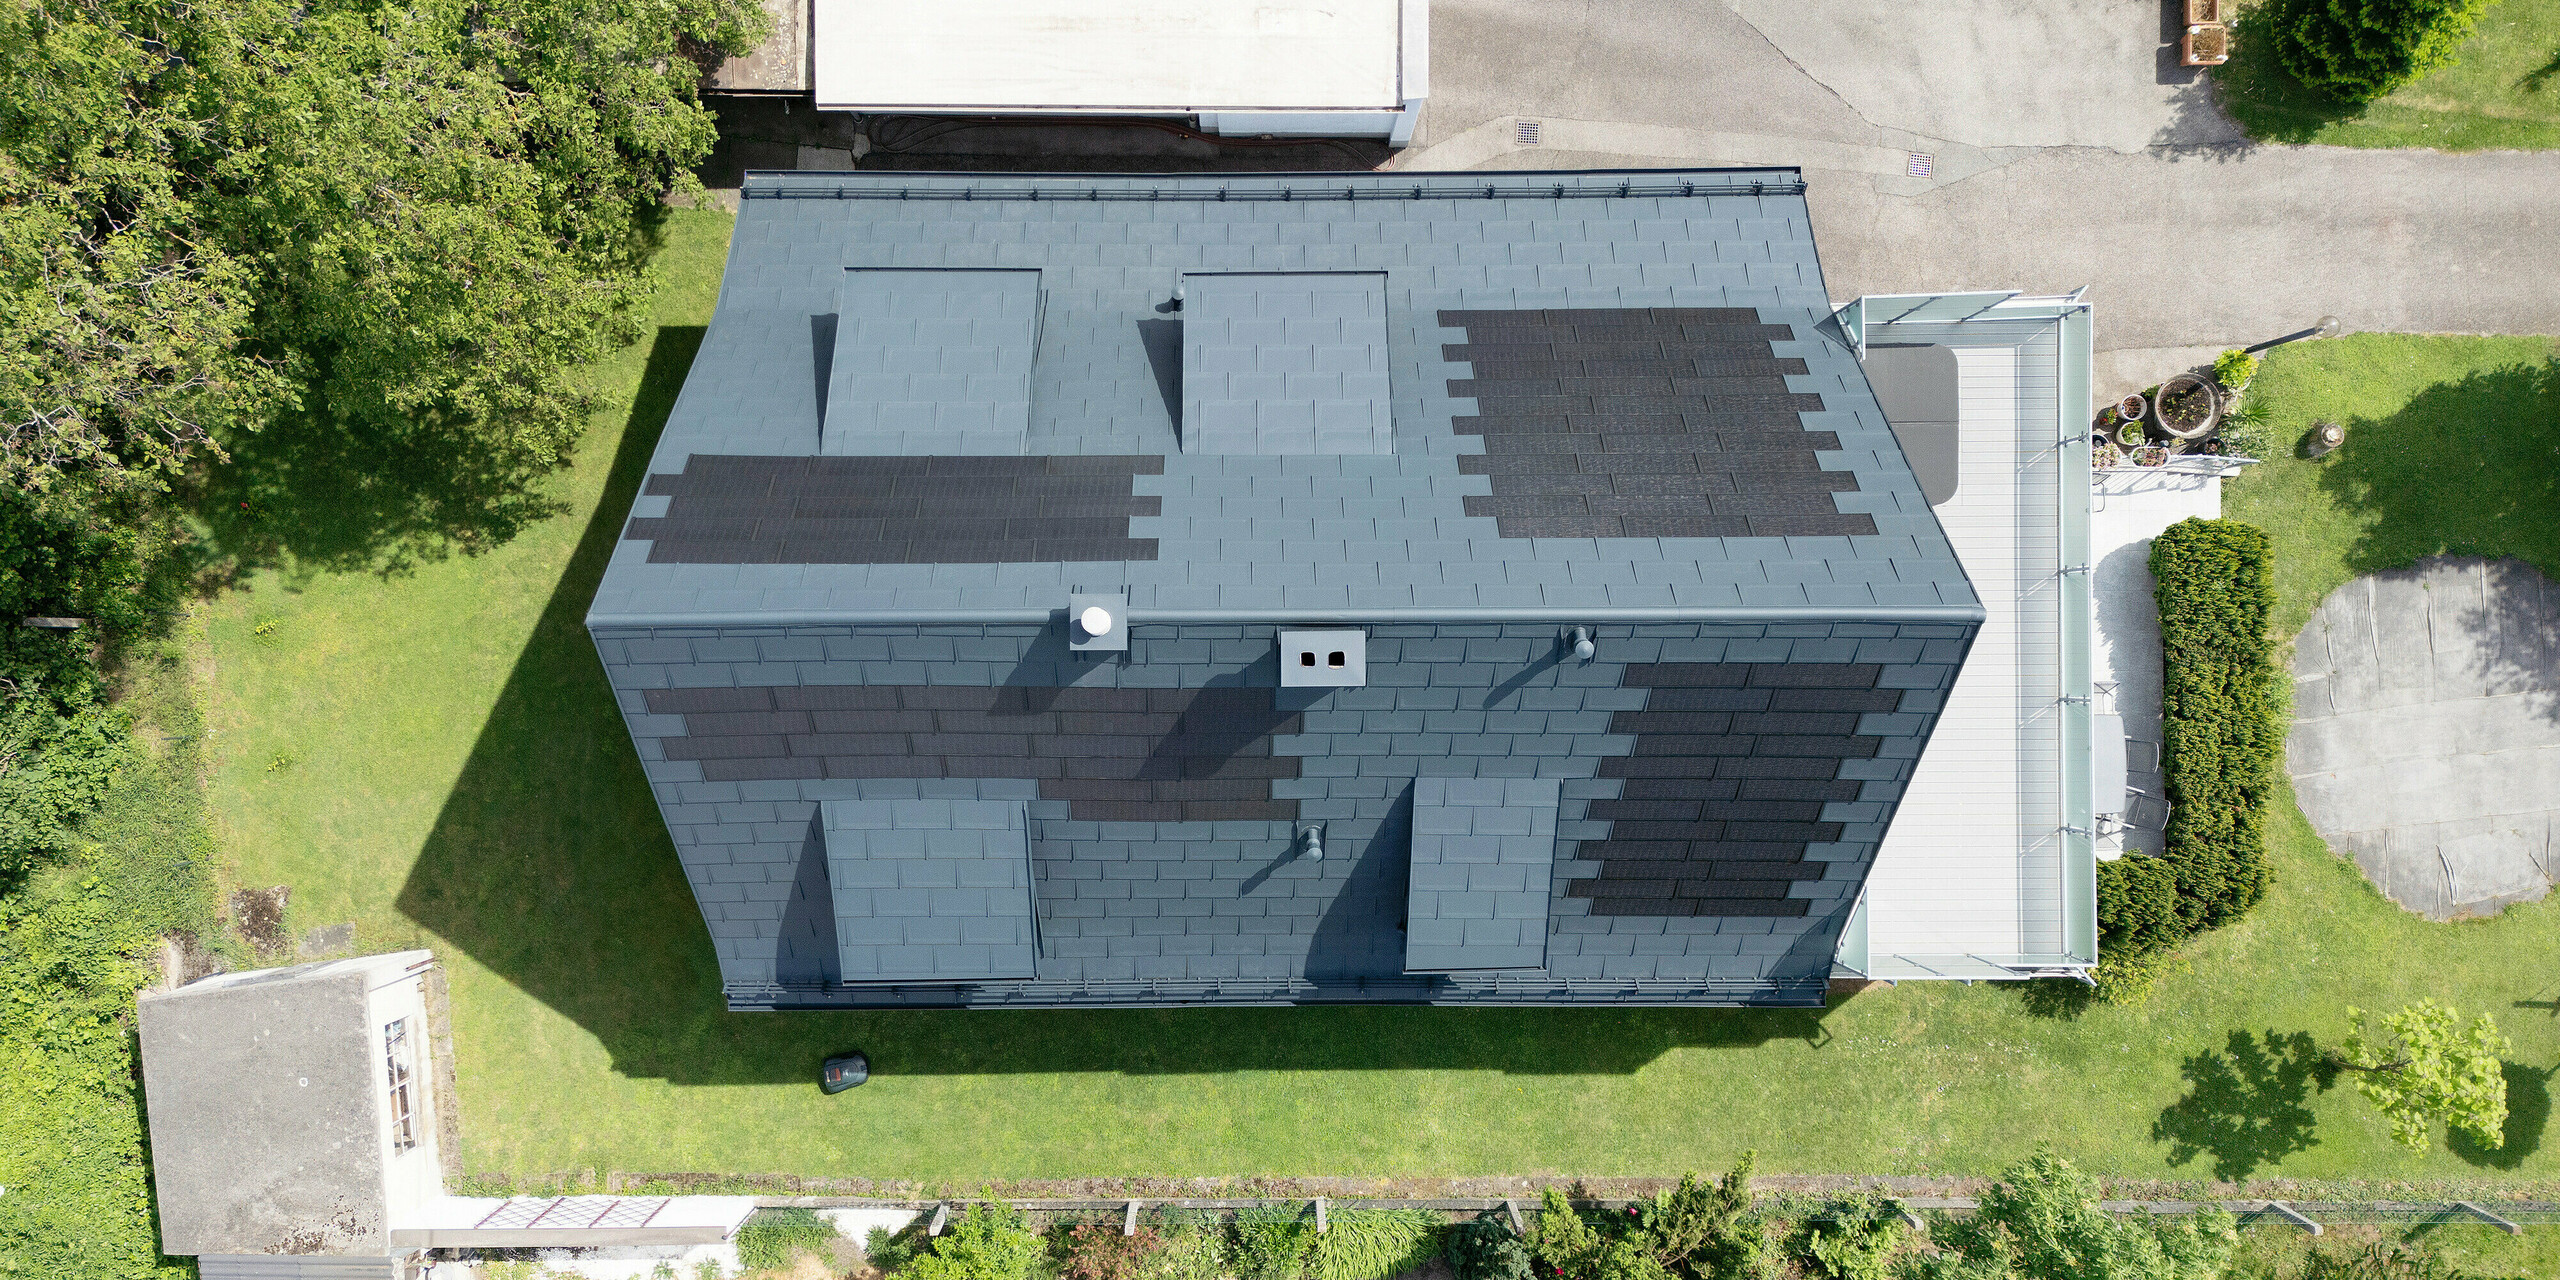 Sanierung eines Einfamilienhauses in Leonding mit PREFA Solardachplatten in Anthrazit. Die Vogelperspektive zeigt das Dach nach der Sanierung, ausgestattet mit integrierten Solarmodulen. Diese bieten eine nachhaltige und energieeffiziente Lösung, die sich harmonisch in die Dachfläche einfügt. Das Projekt zeigt die Vorteile von PREFA Materialien, die Langlebigkeit und Witterungsbeständigkeit mit modernen Photovoltaiksystemen kombinieren. Ideal für nachhaltiges Bauen und innovative Dachlösungen."